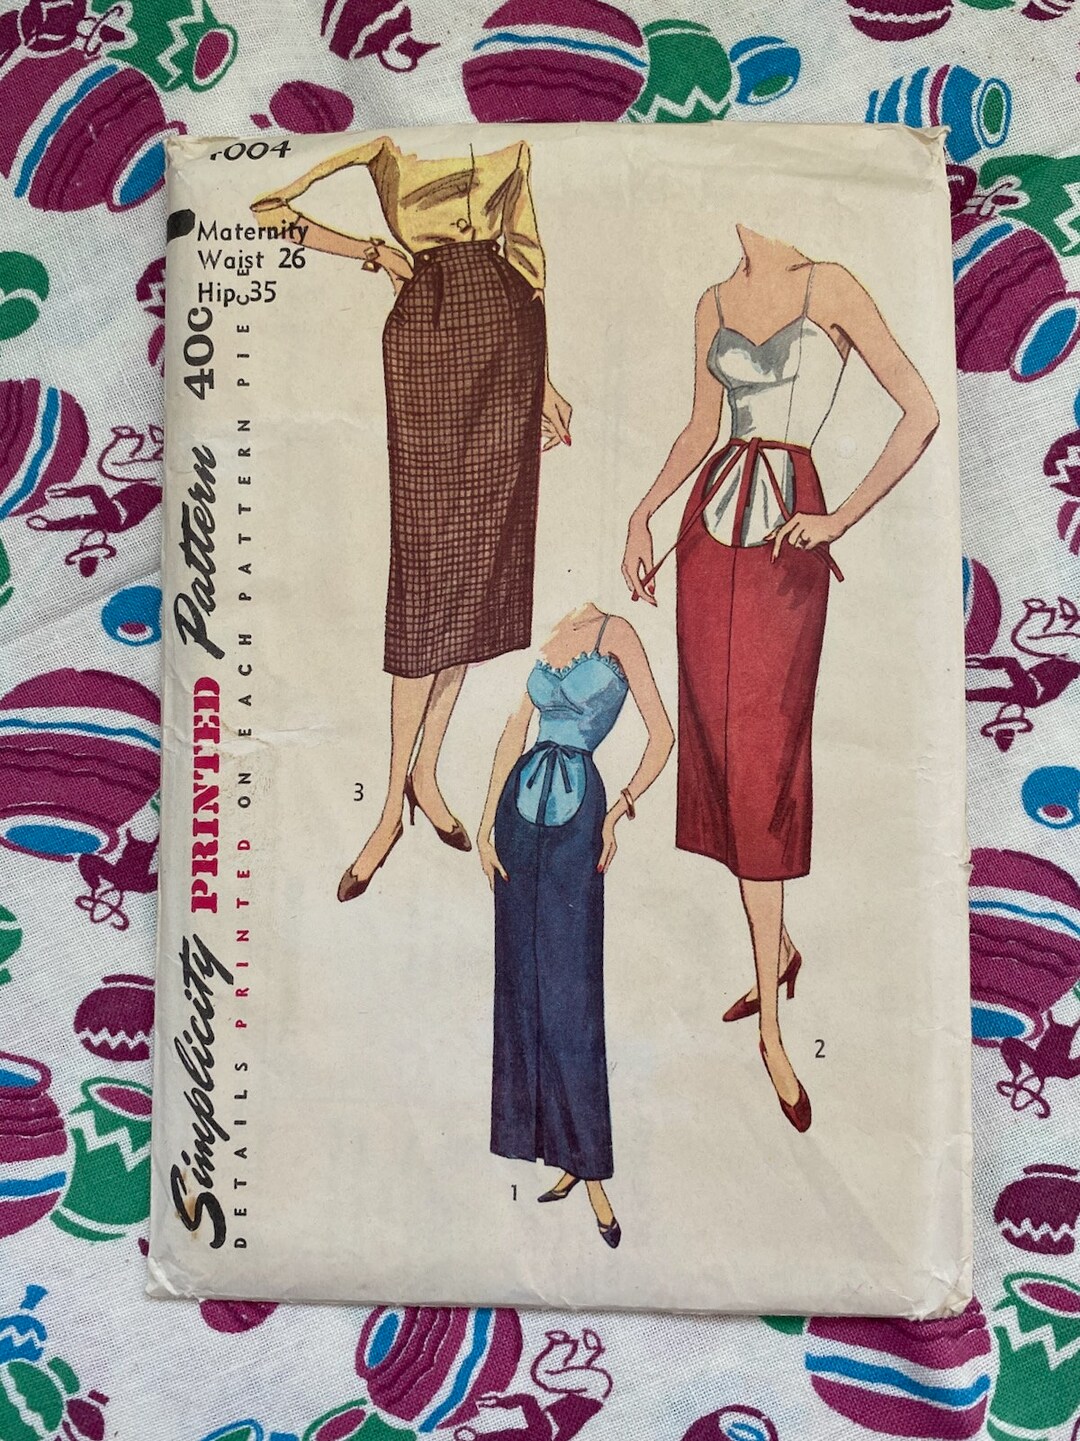 Vintage 1950s Maternity Skirt Pattern Simplicity 4004 Sz S W26 - Etsy